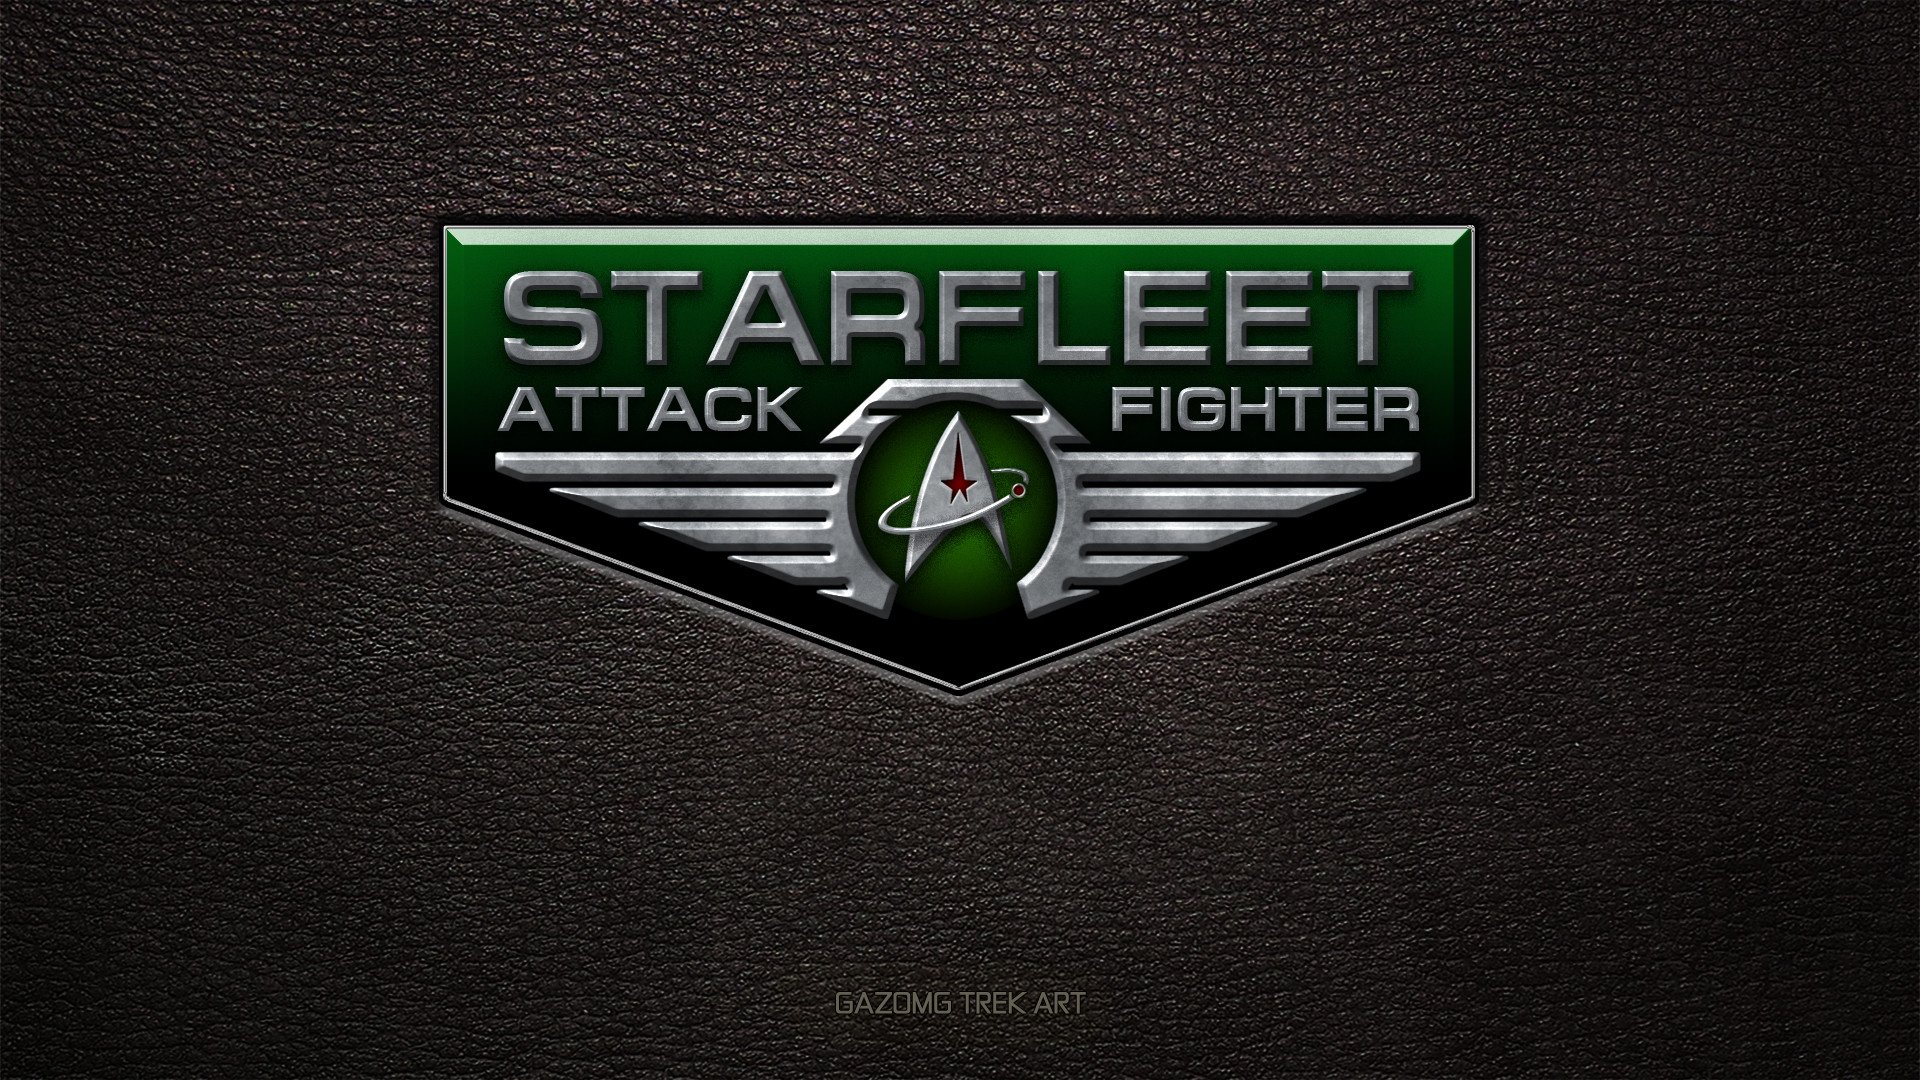 1920x1080 ... Starfleet Attack Fighter Logo Star Trek by gazomg